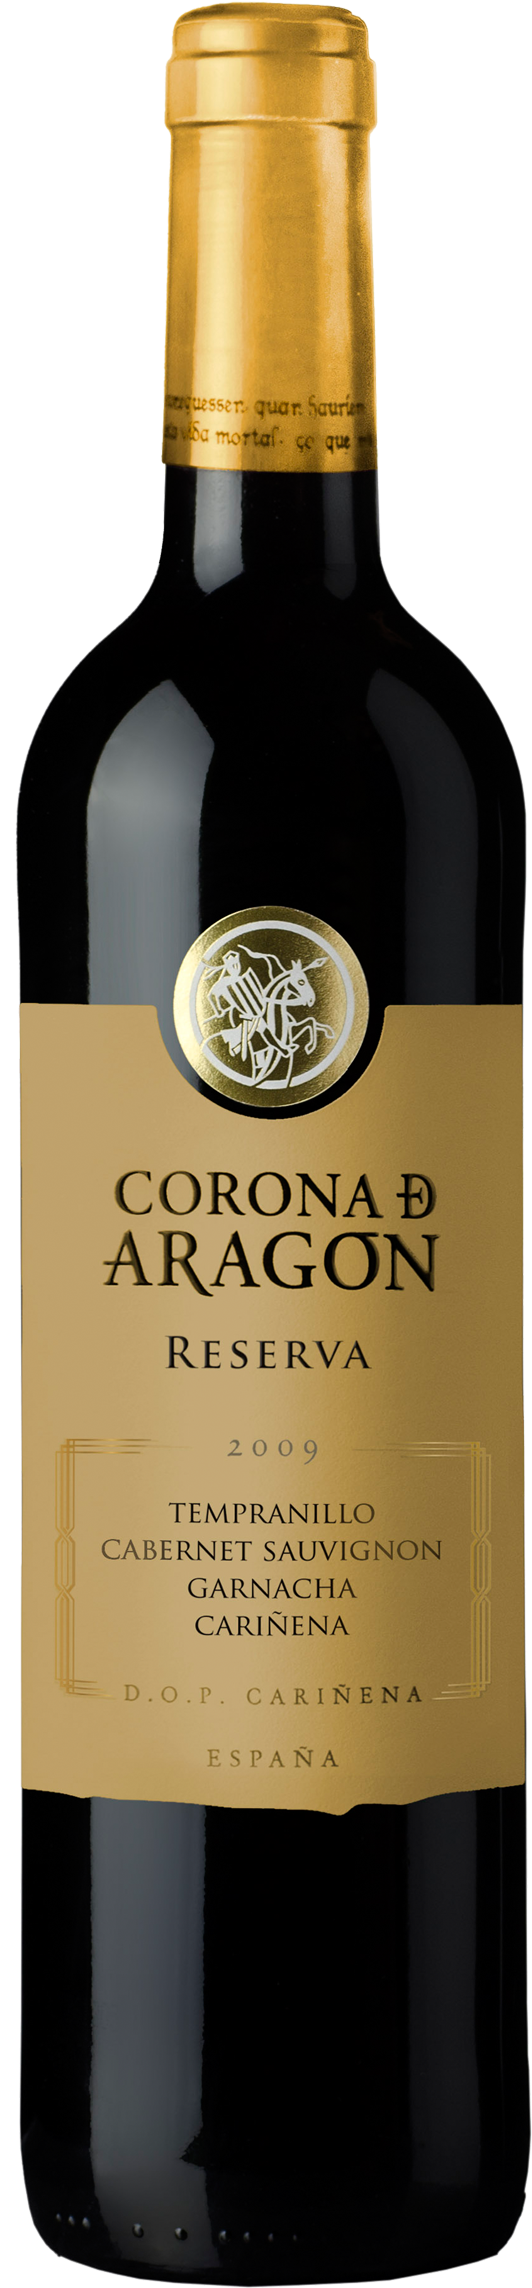 Corona De Aragon Reserva (1200x2500), Png Download